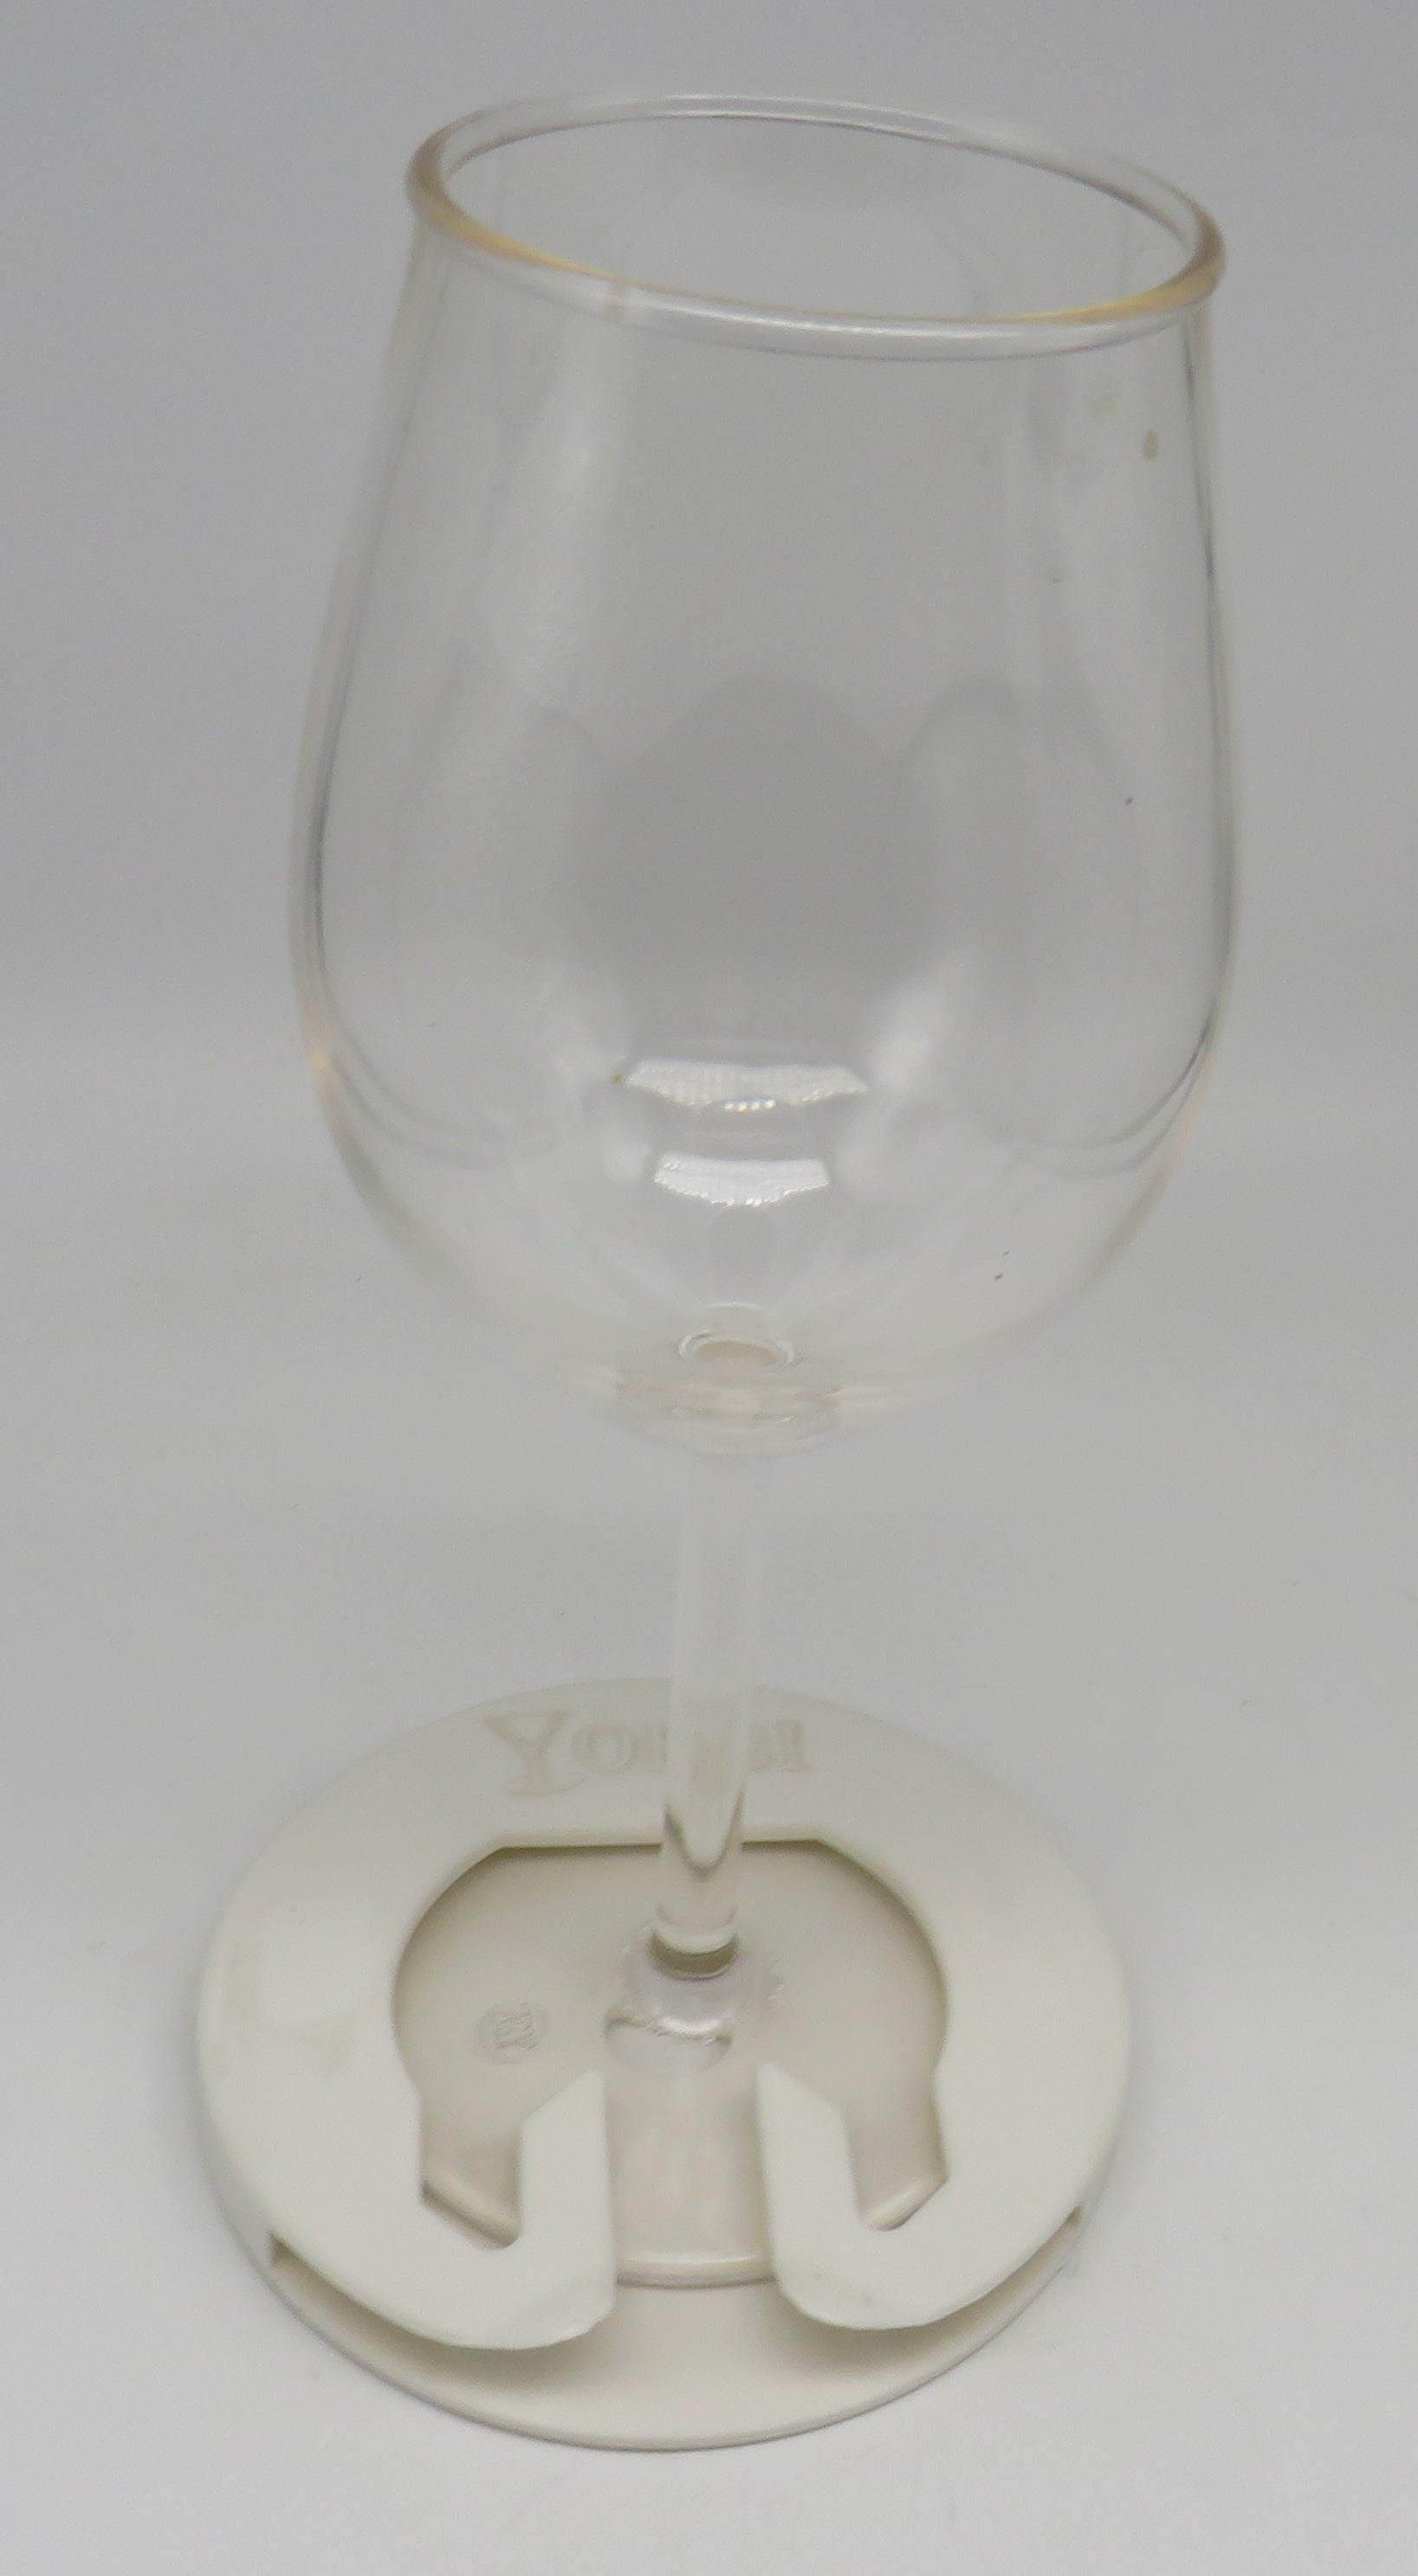 Yoebi White Flat Stemware Cup holder (Non-Slide) For Wine Glasses